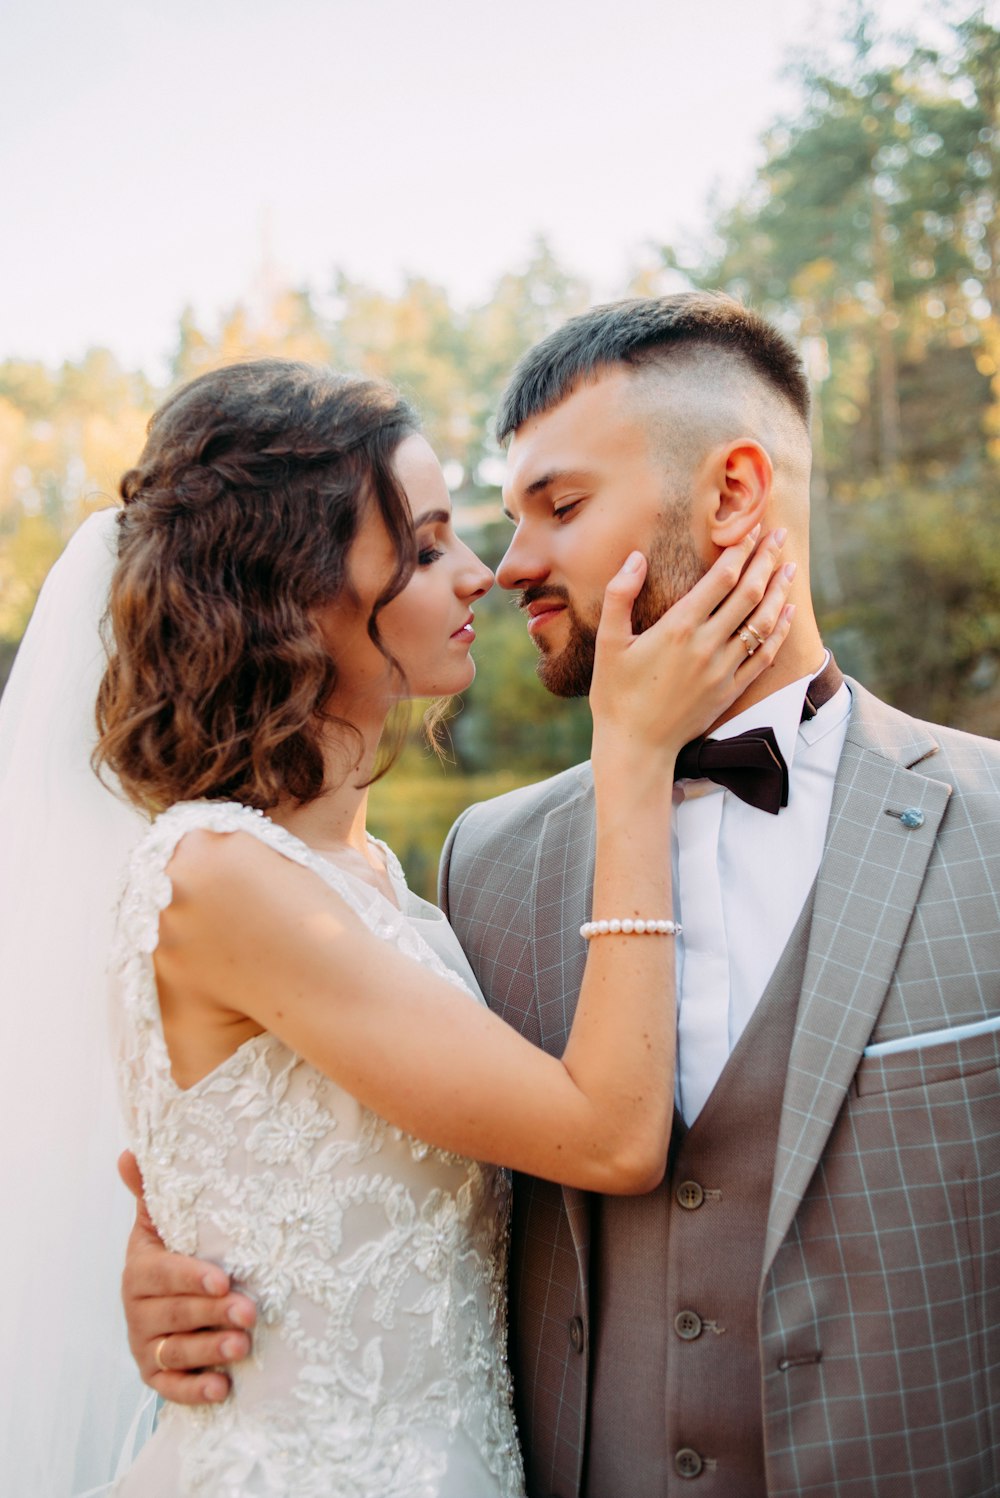 mujer en vestido de novia sosteniendo la barbilla derecha de un hombre con ambos a punto de besarse